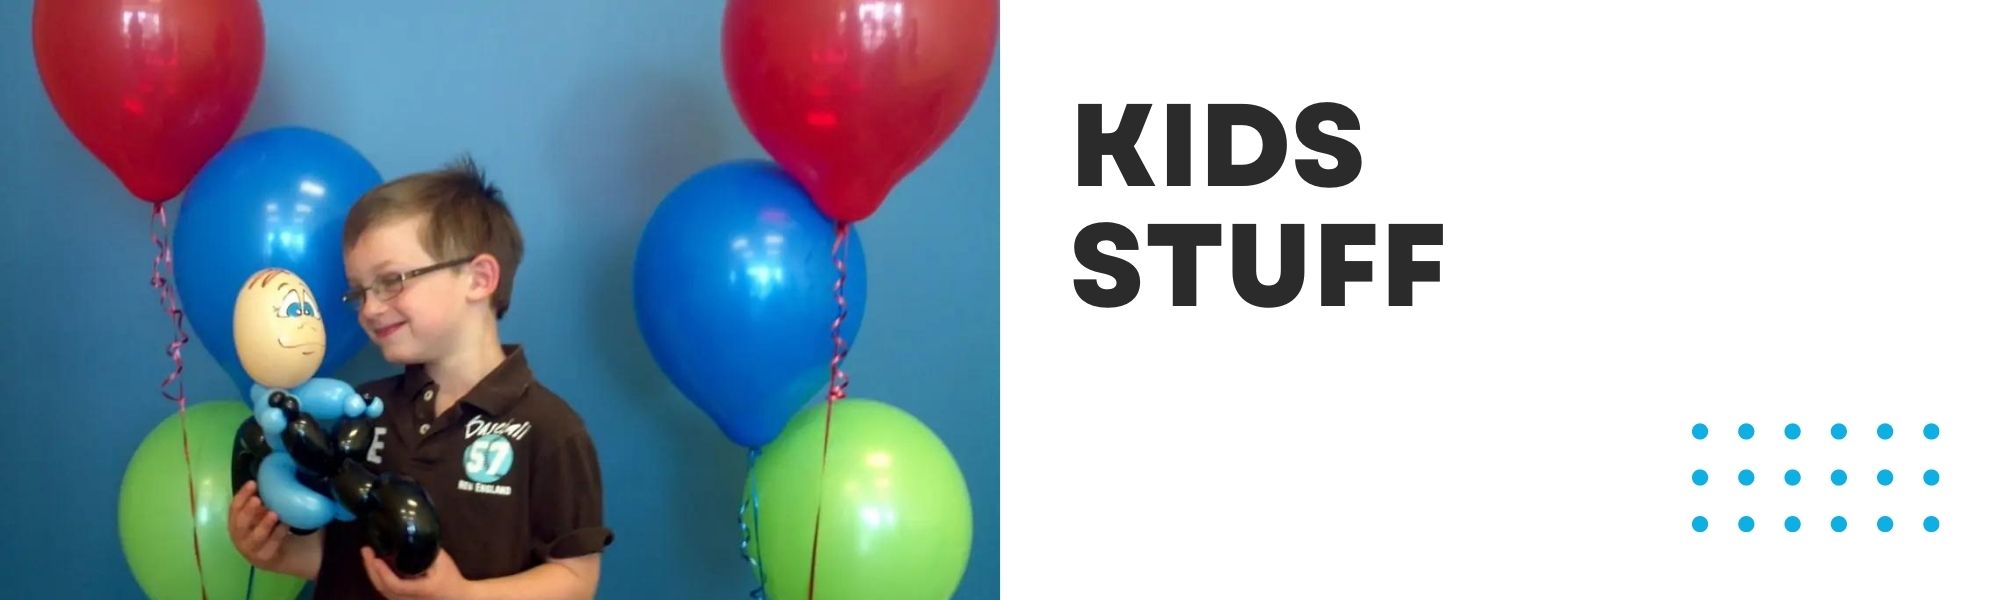 Kids Stuff - Balloon Animals